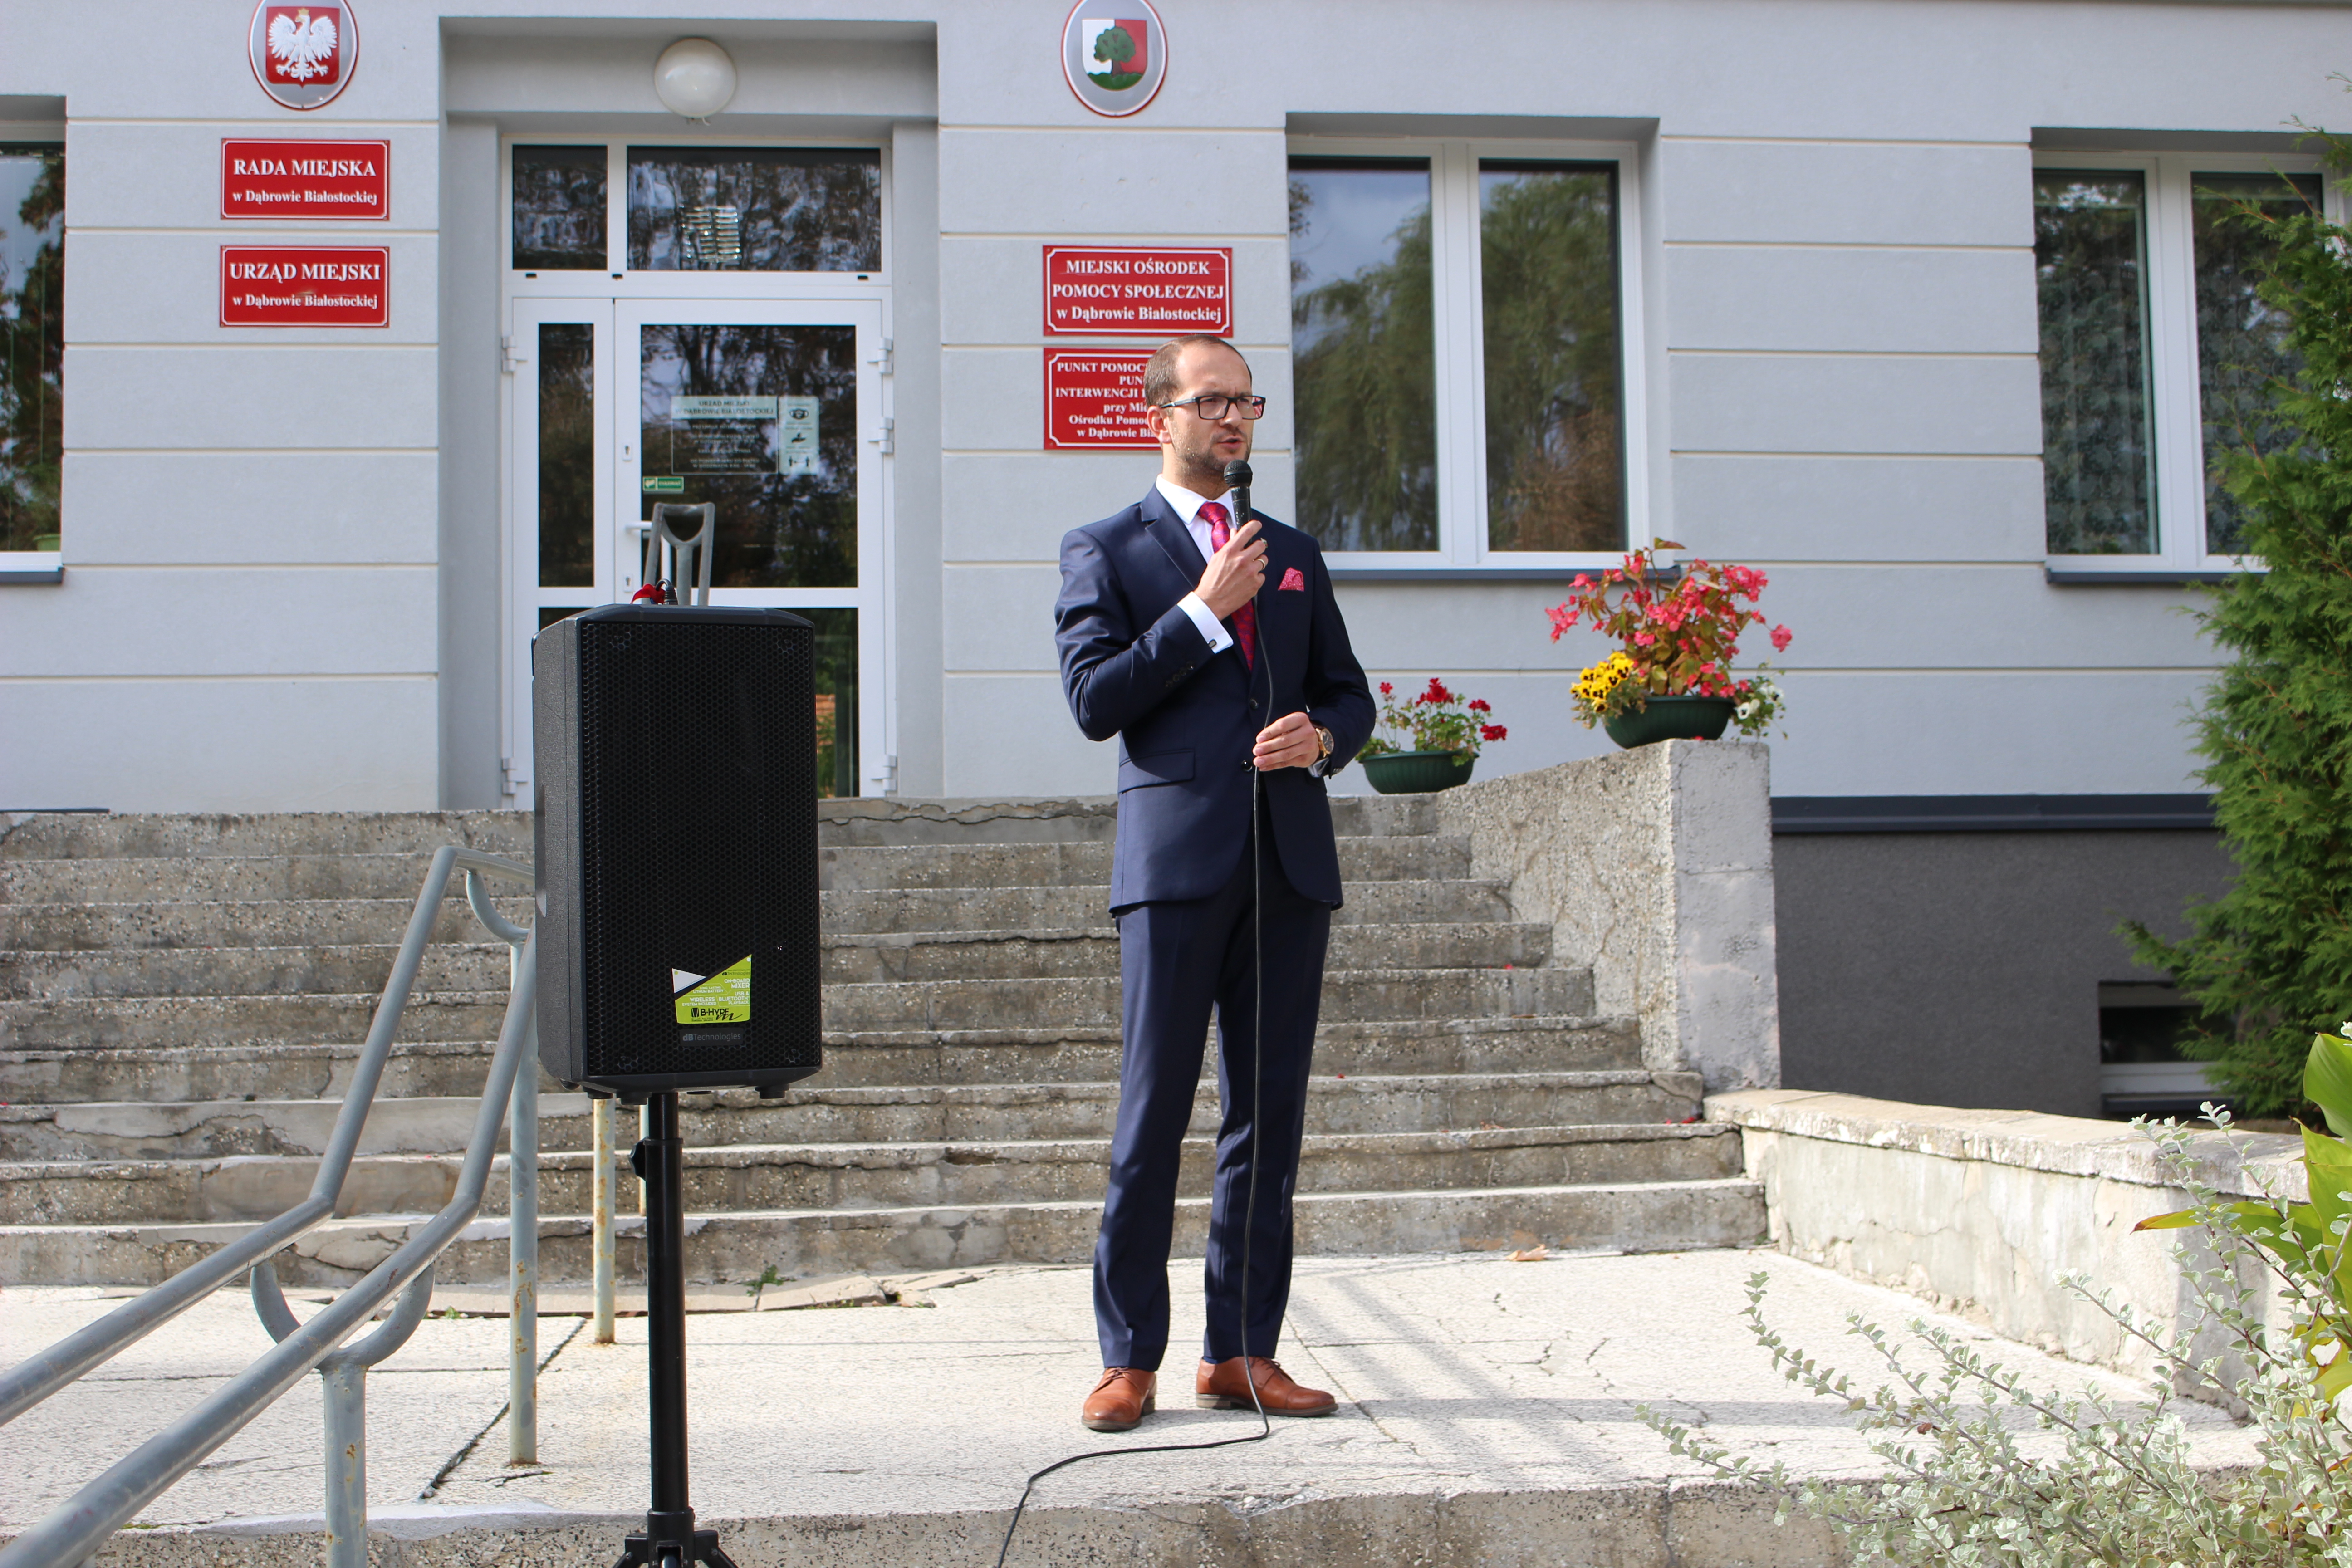 Burmistrz Dąbrowy Białostockiej przemawia do zgromadzonych w tle budynek urzędu